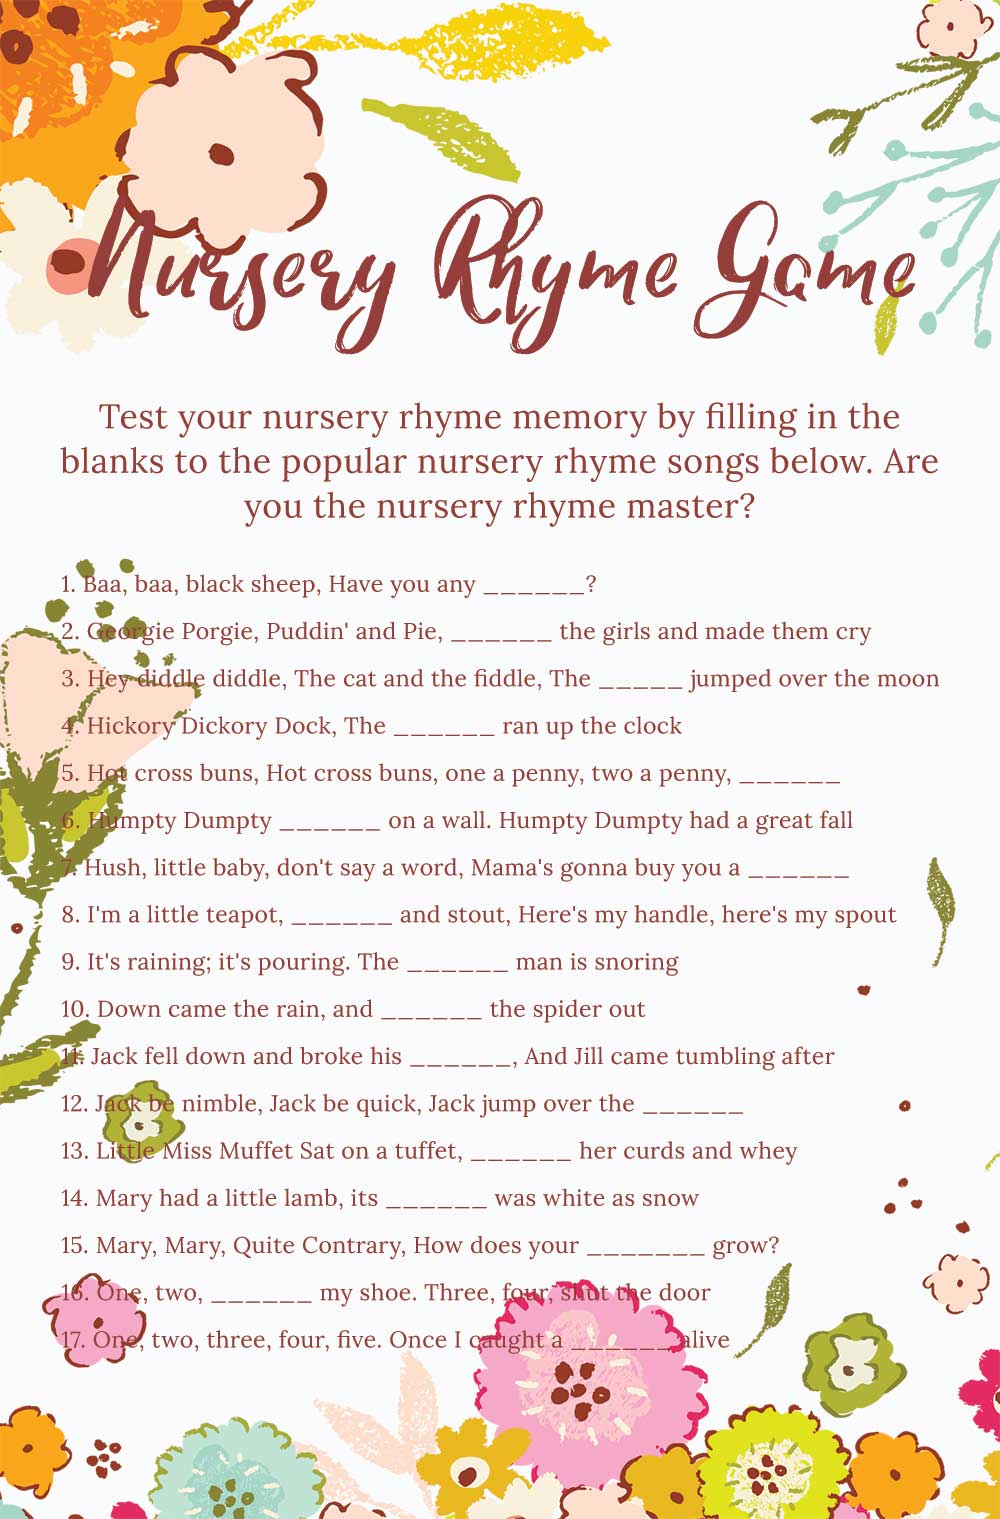 Nursery rhyme game - Spring theme